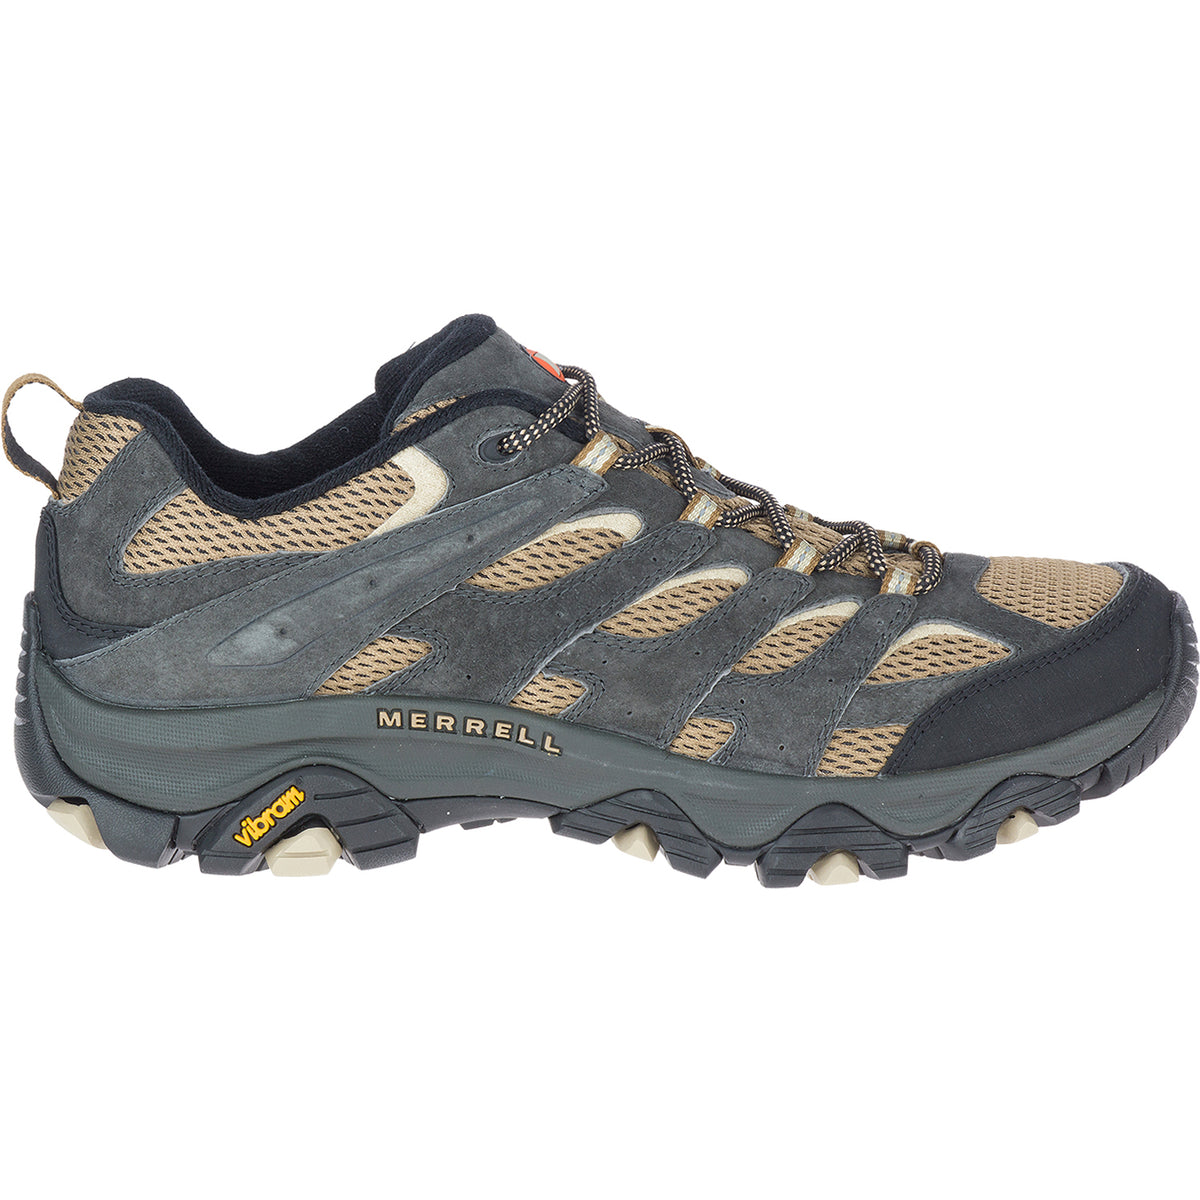 Merrell Moab 3 Butternut | Men's Hiking Shoes | Footwear etc.